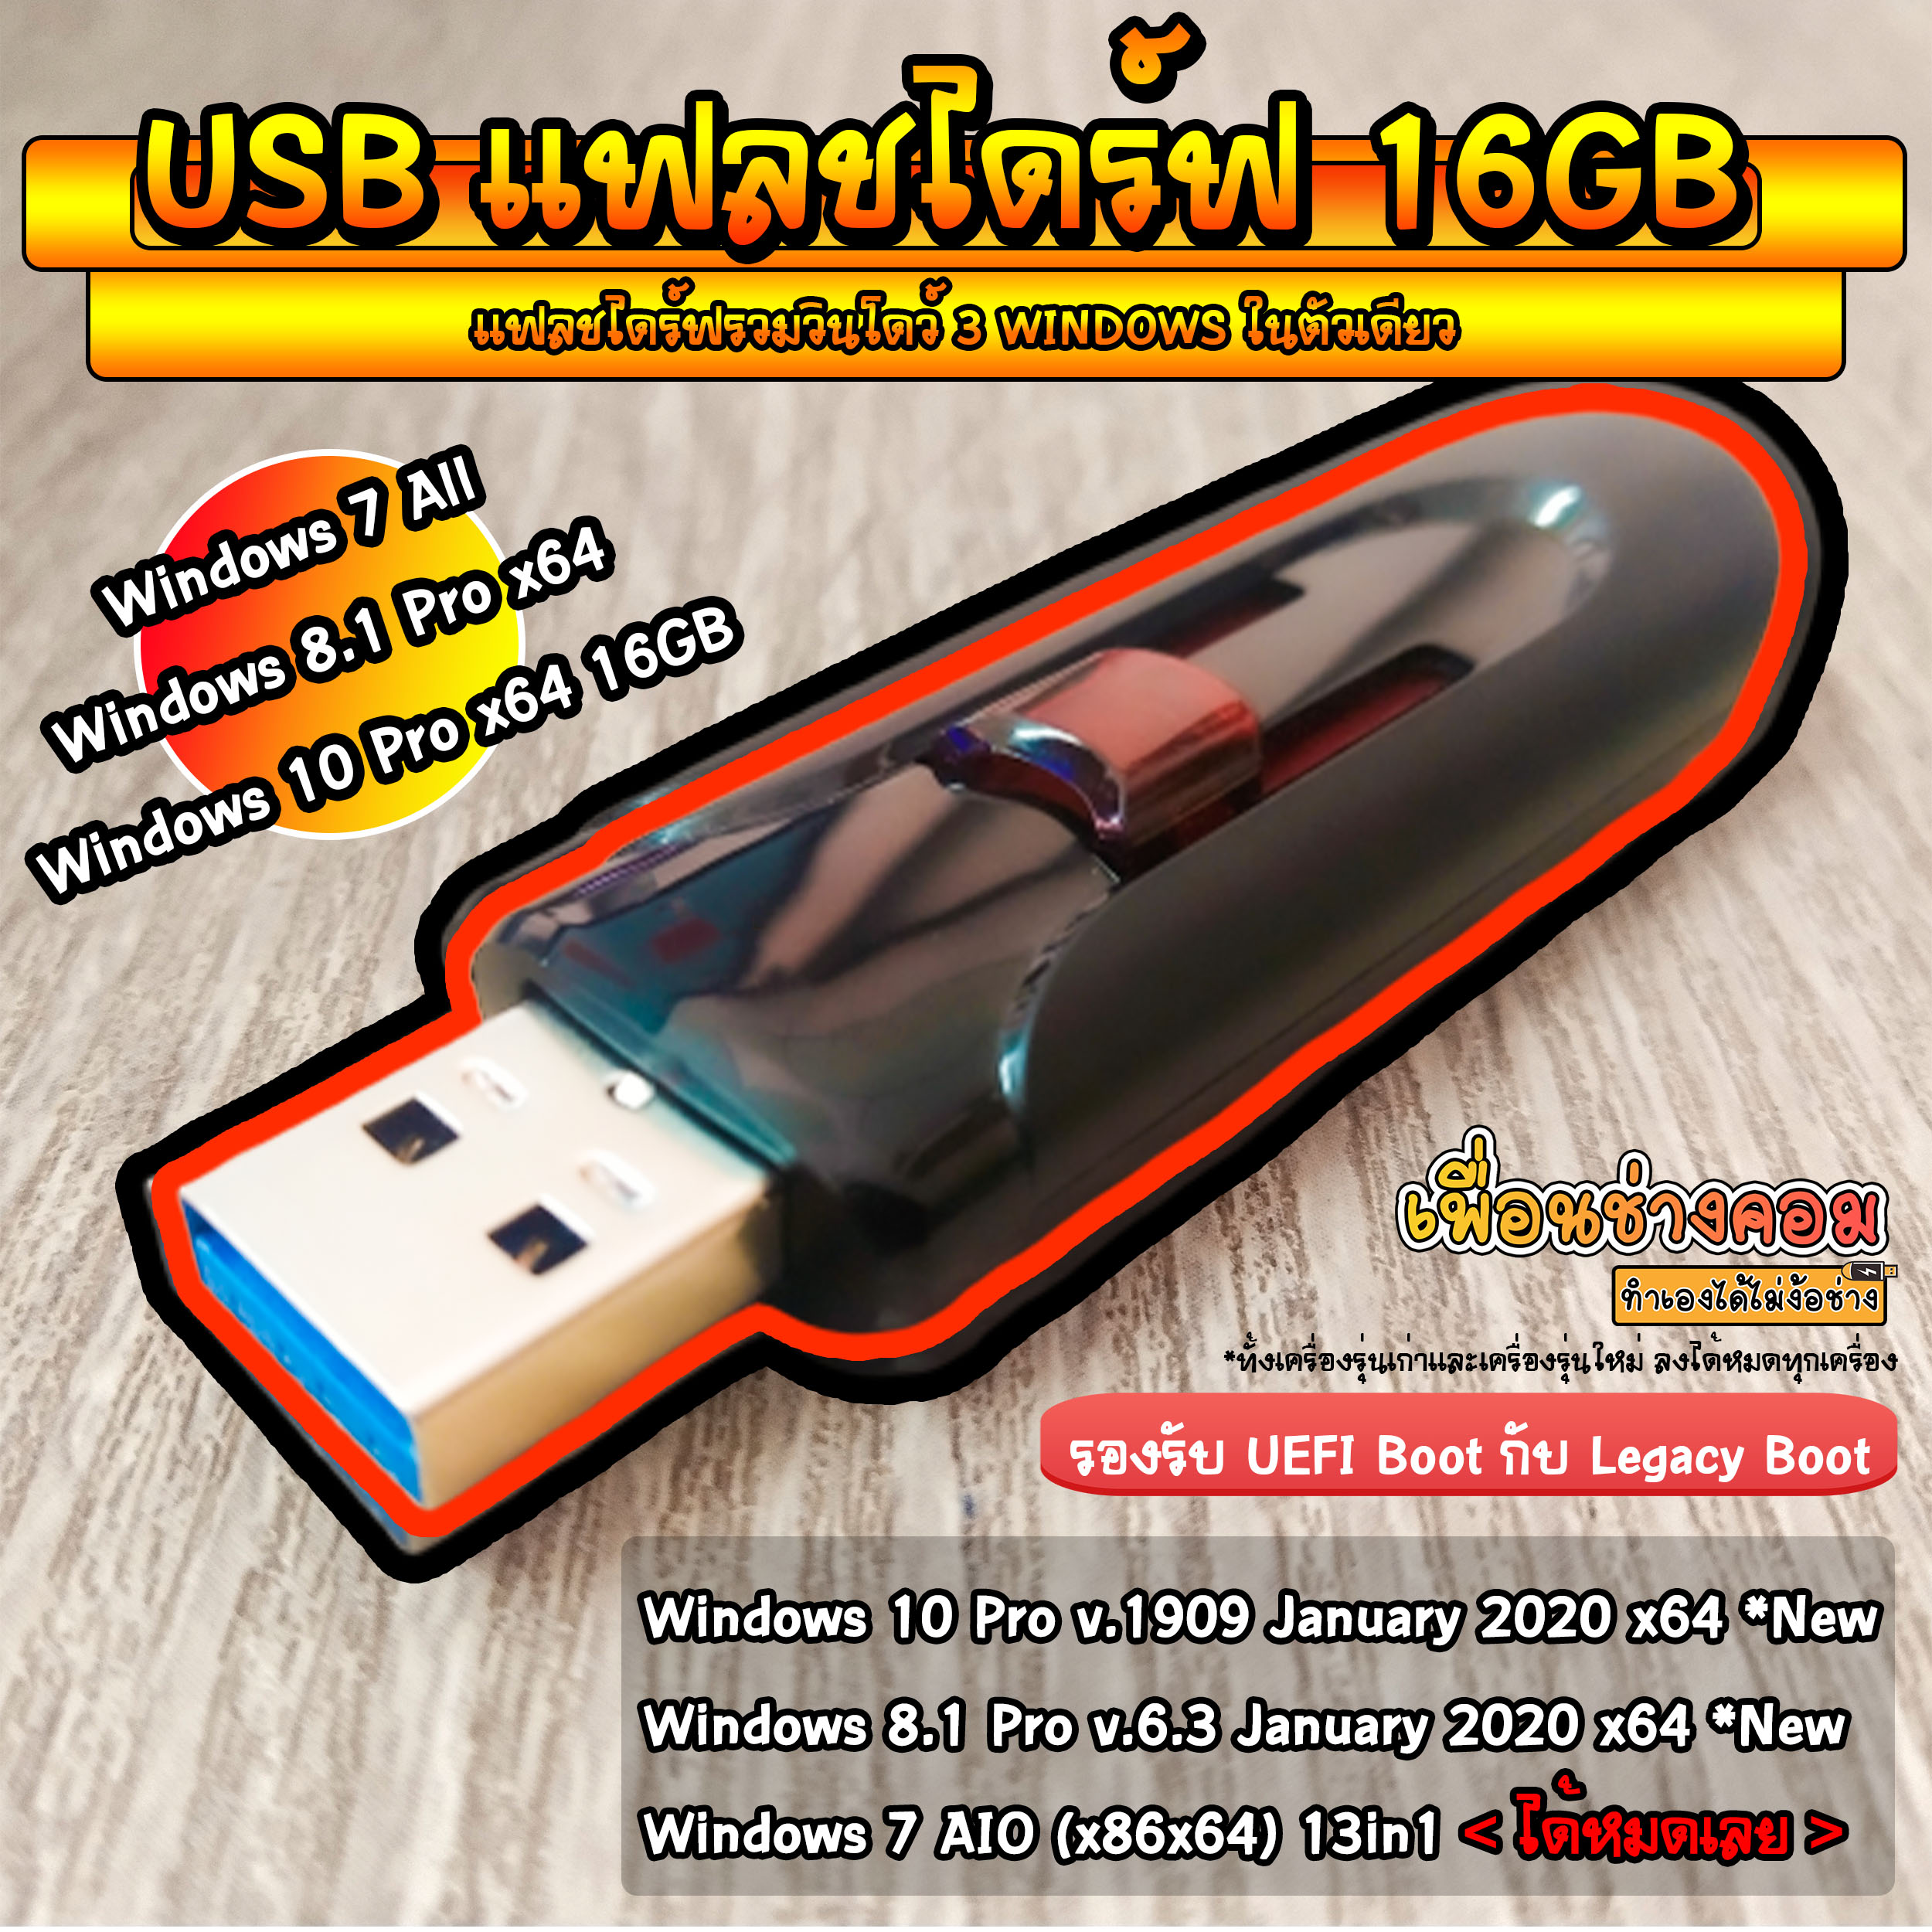 USB แฟลชไดร์ รวมวินโดว์ 7AIO/8.1Pro/10Pro | 16GB*